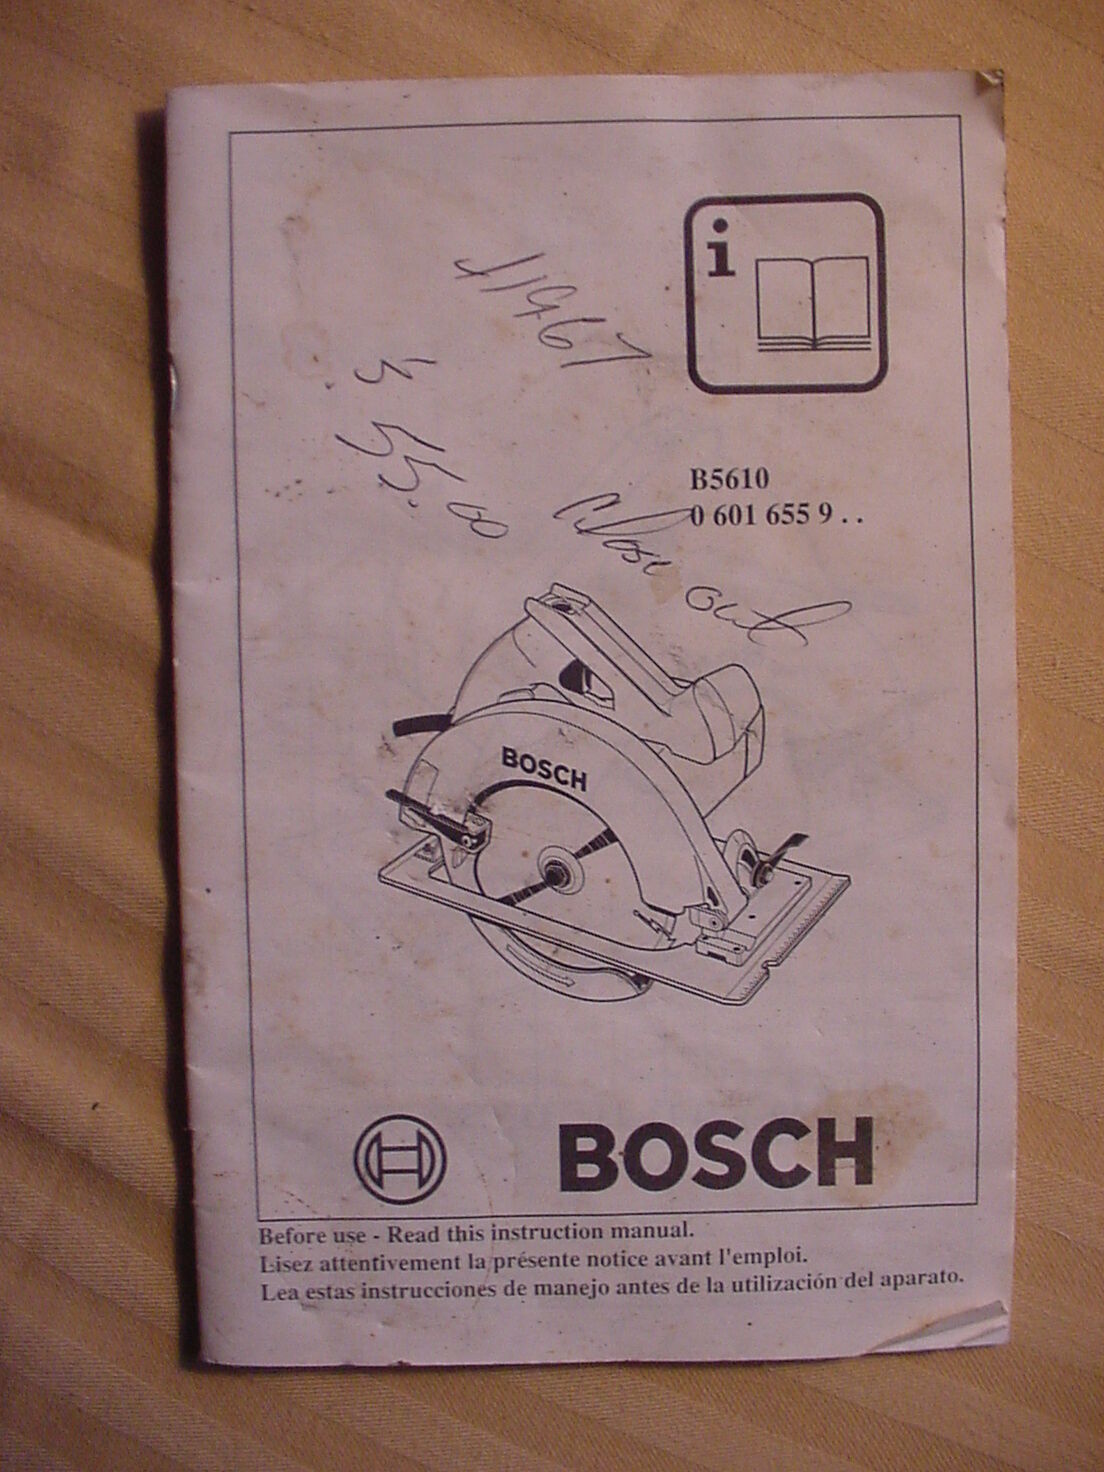 seta Padre fage menta Manual de instrucciones del propietario Bosch para sierra circular de 7-1/4  pulgadas modelo B5610 | eBay